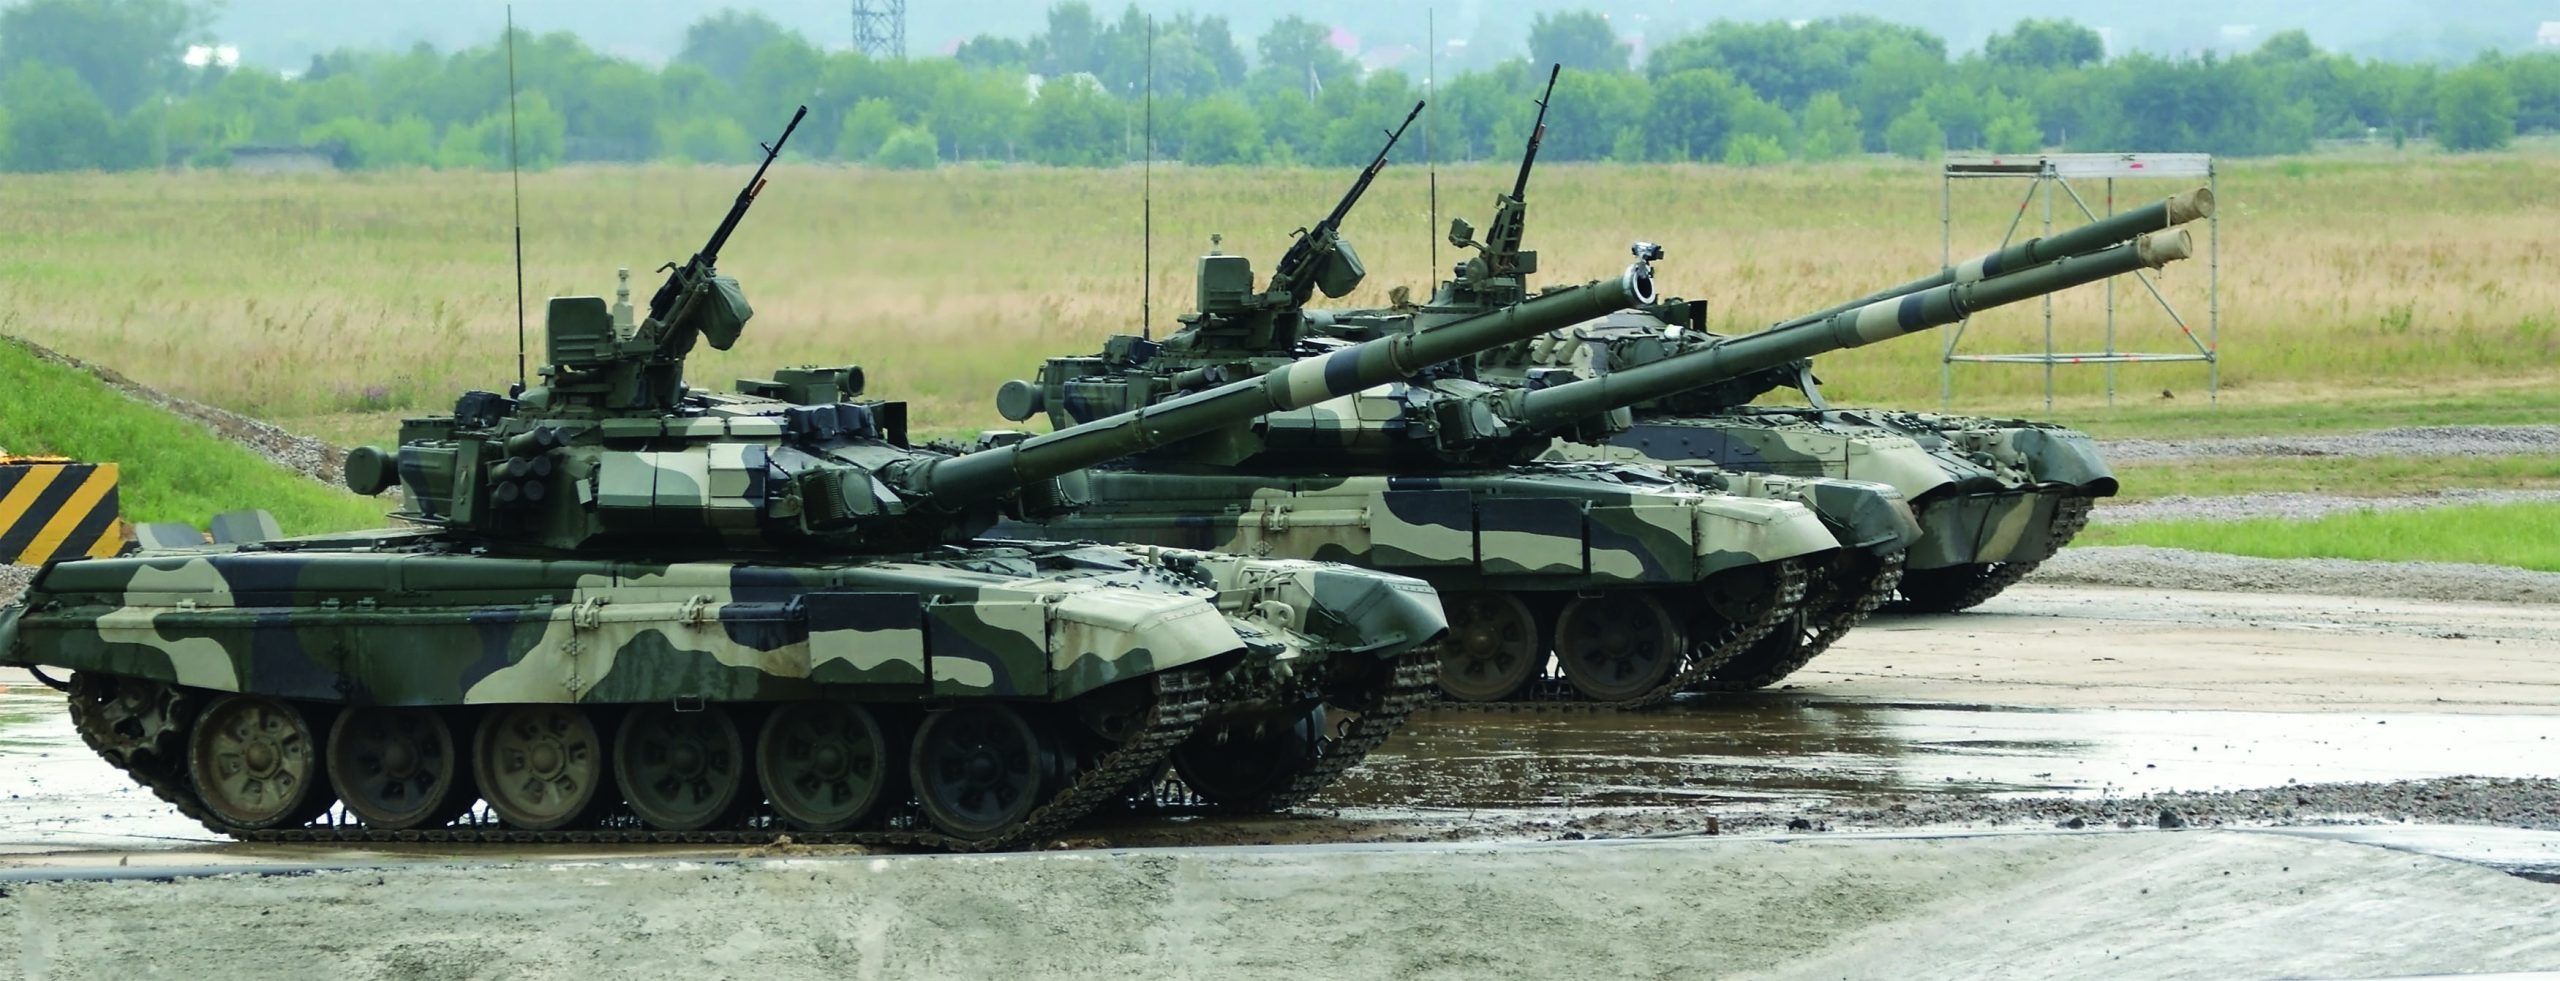 T-90,Is,A,Russian,Main,Battle,Tank